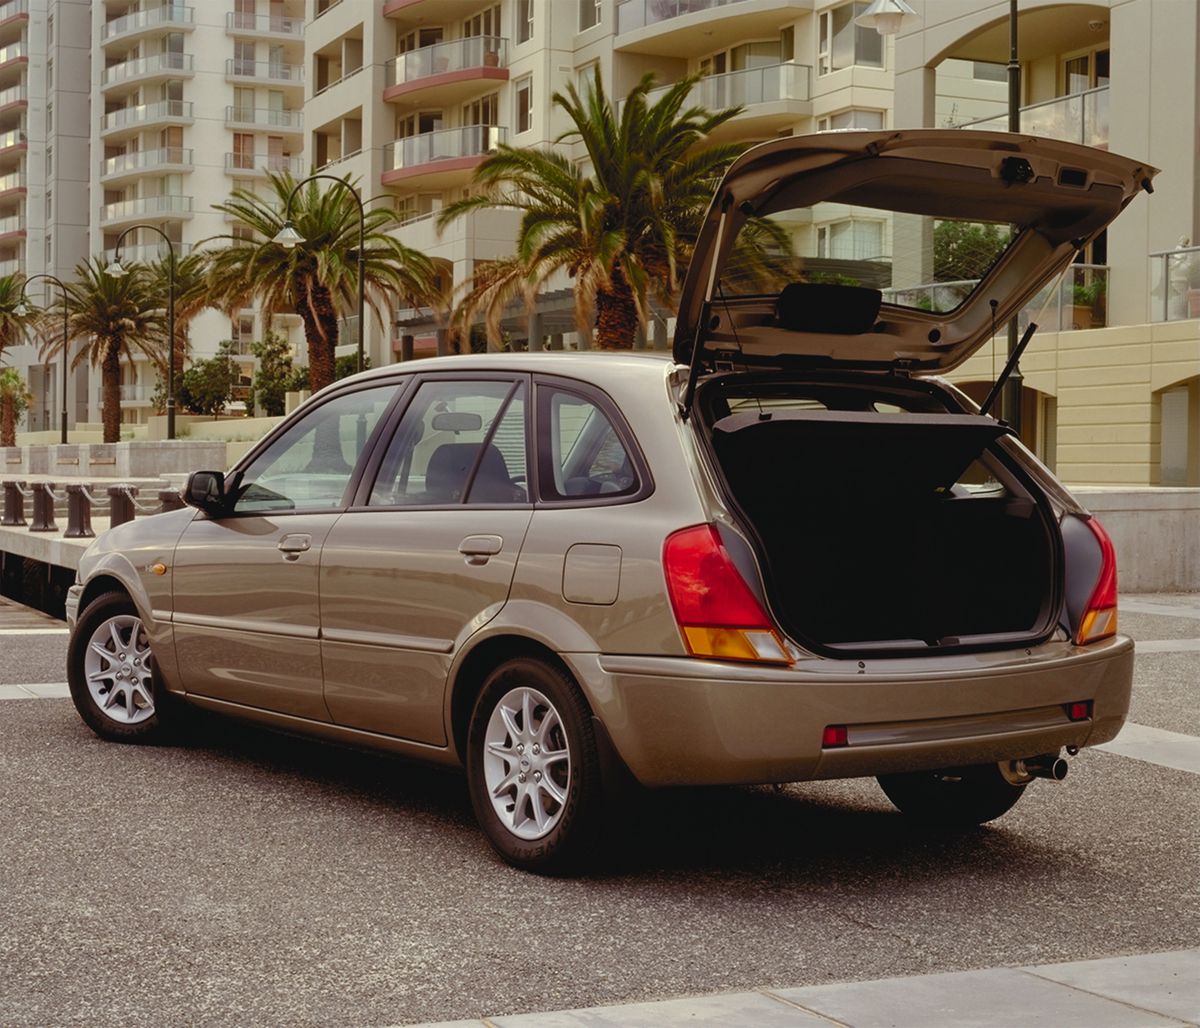 Ford Laser 1994. Carrosserie, extérieur. Hatchback 5-portes, 4 génération